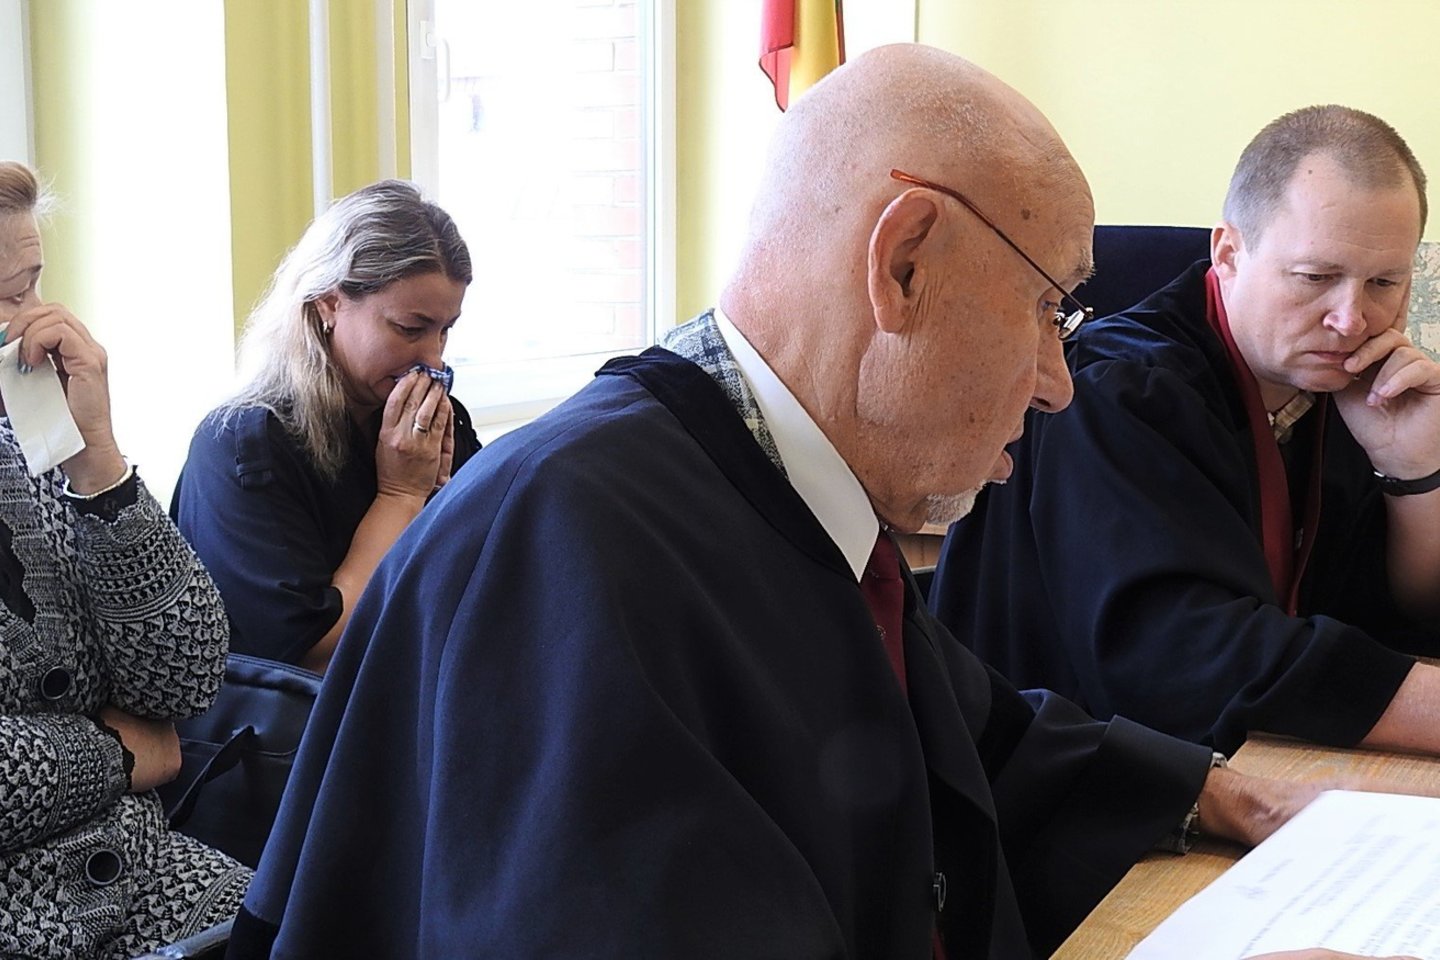 Teisme procese dalyvauja iš Ukrainos atvykę aukos artimieji. <br> G.Pilaičio nuotr.